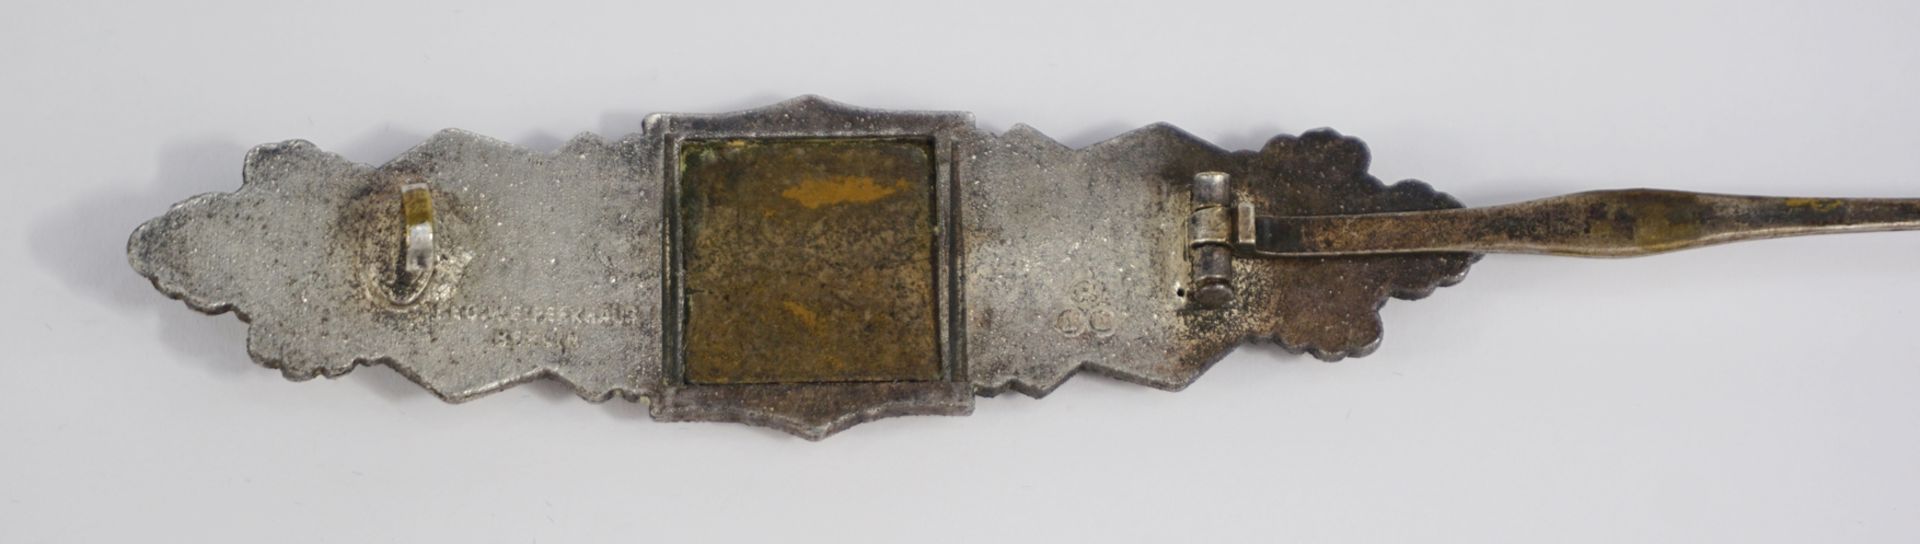 Heer Nahkampfspange in Silber, Sammleranfertigung - Bild 2 aus 4